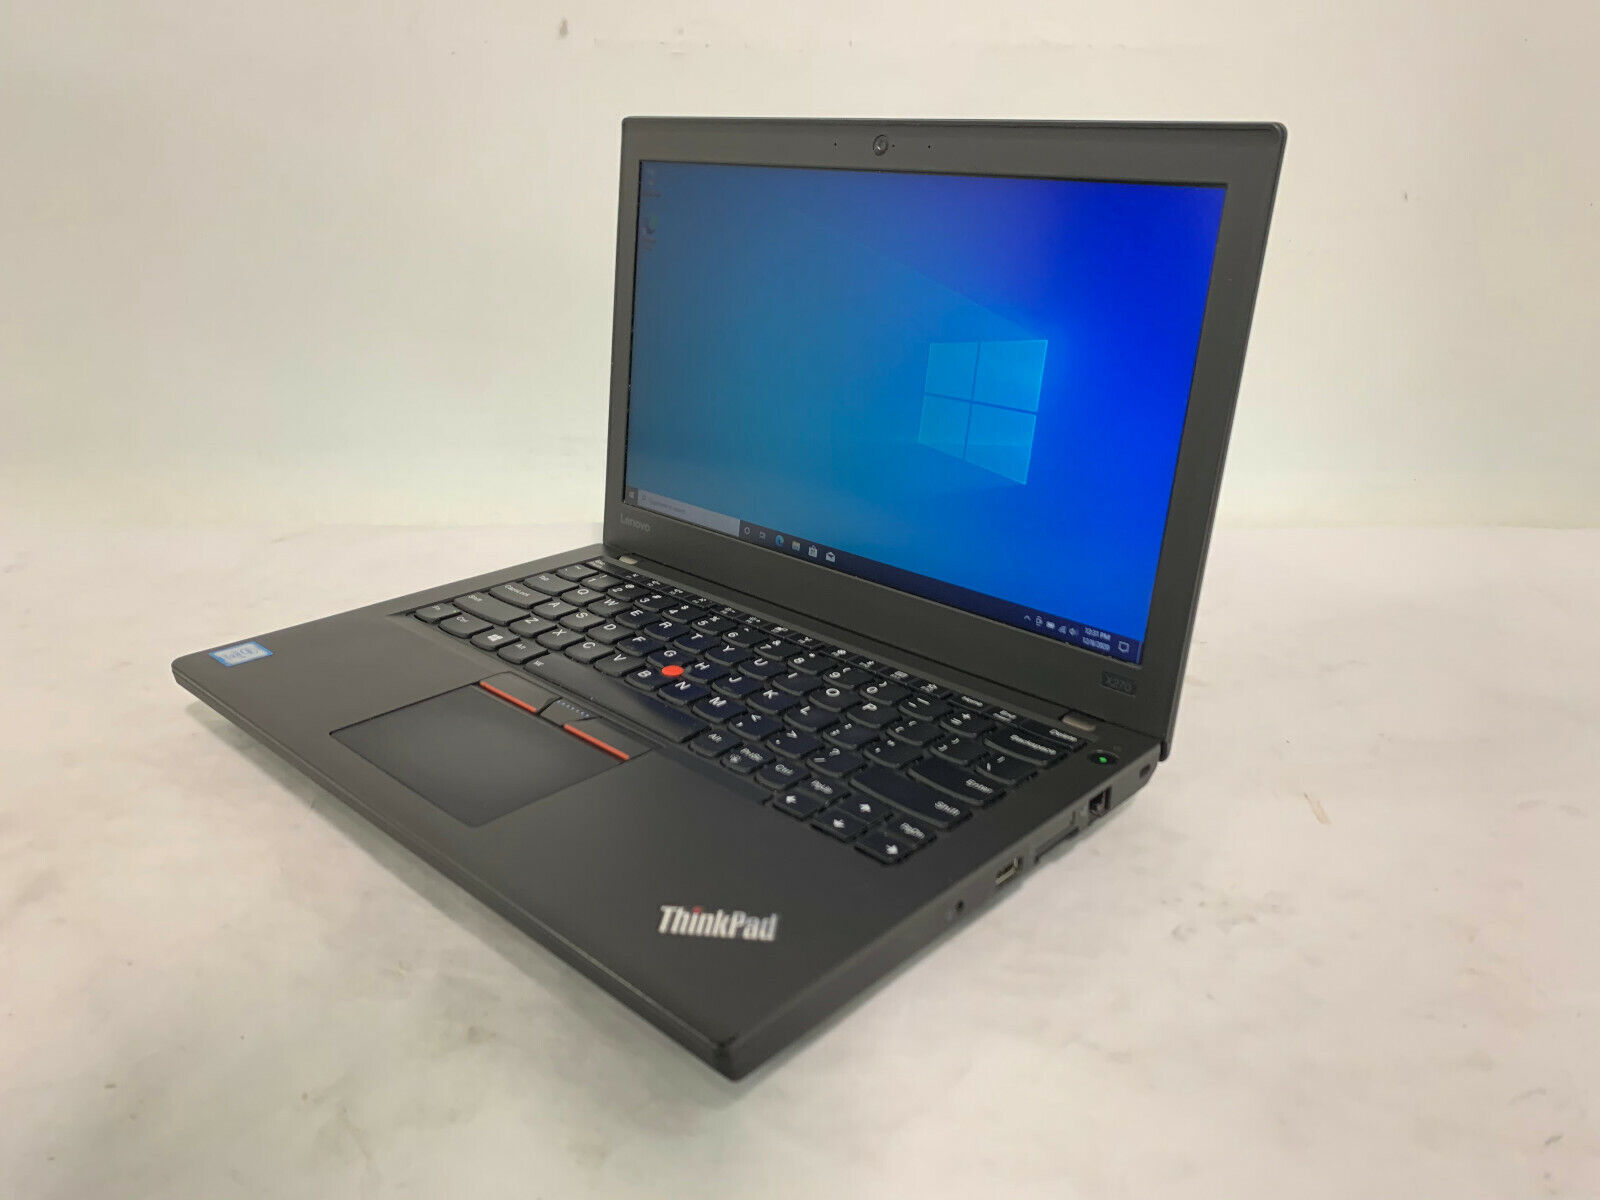 Lenovo ThinkPad X270 12.5" [20HMS04P00] 2.8GHz i7 7600U 8GB RAM 256GB SSD W10P64